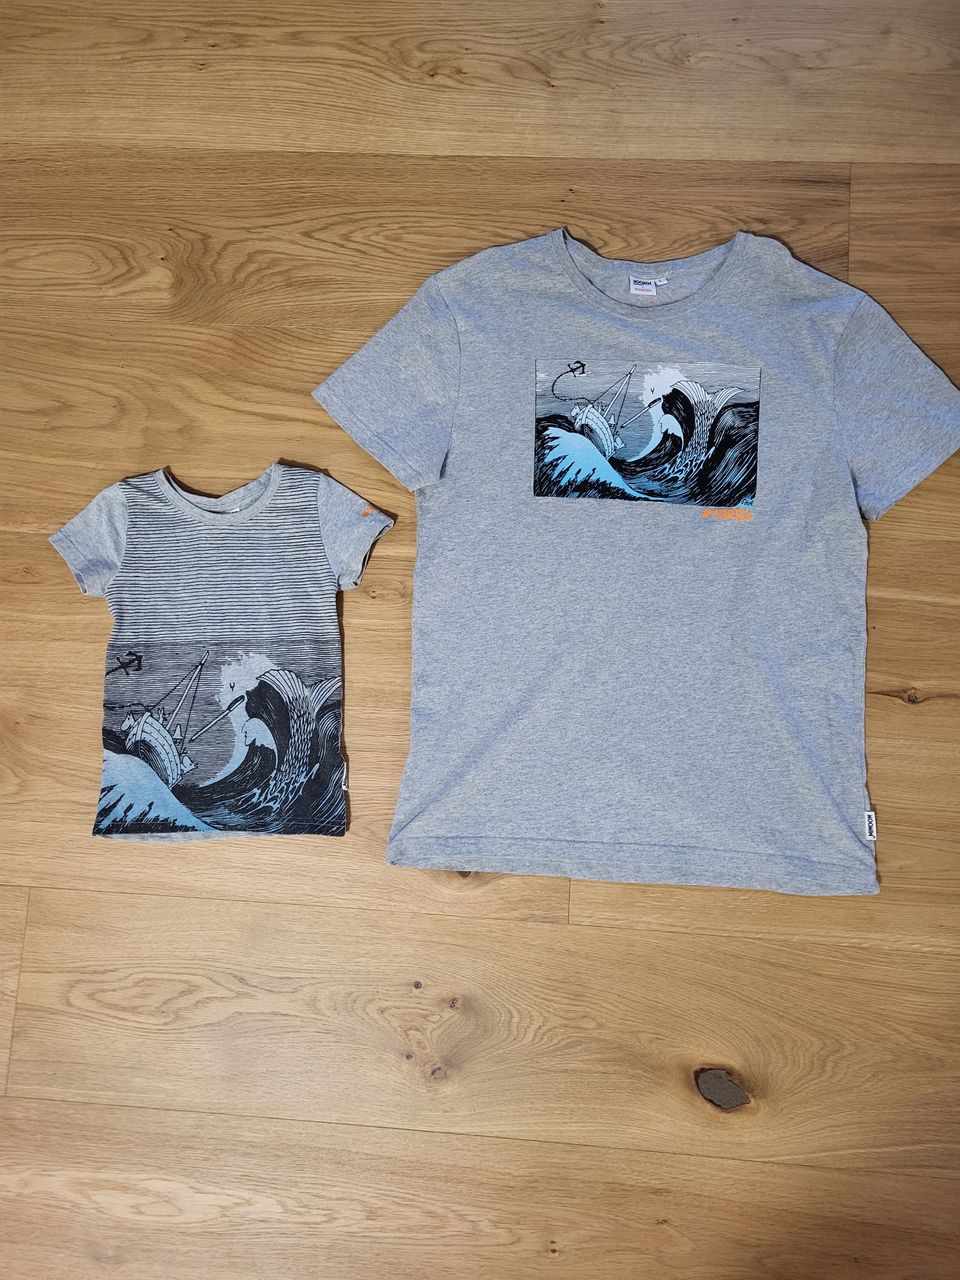 Muumi t-paidat aikuiselle ja lapselle, L & 98